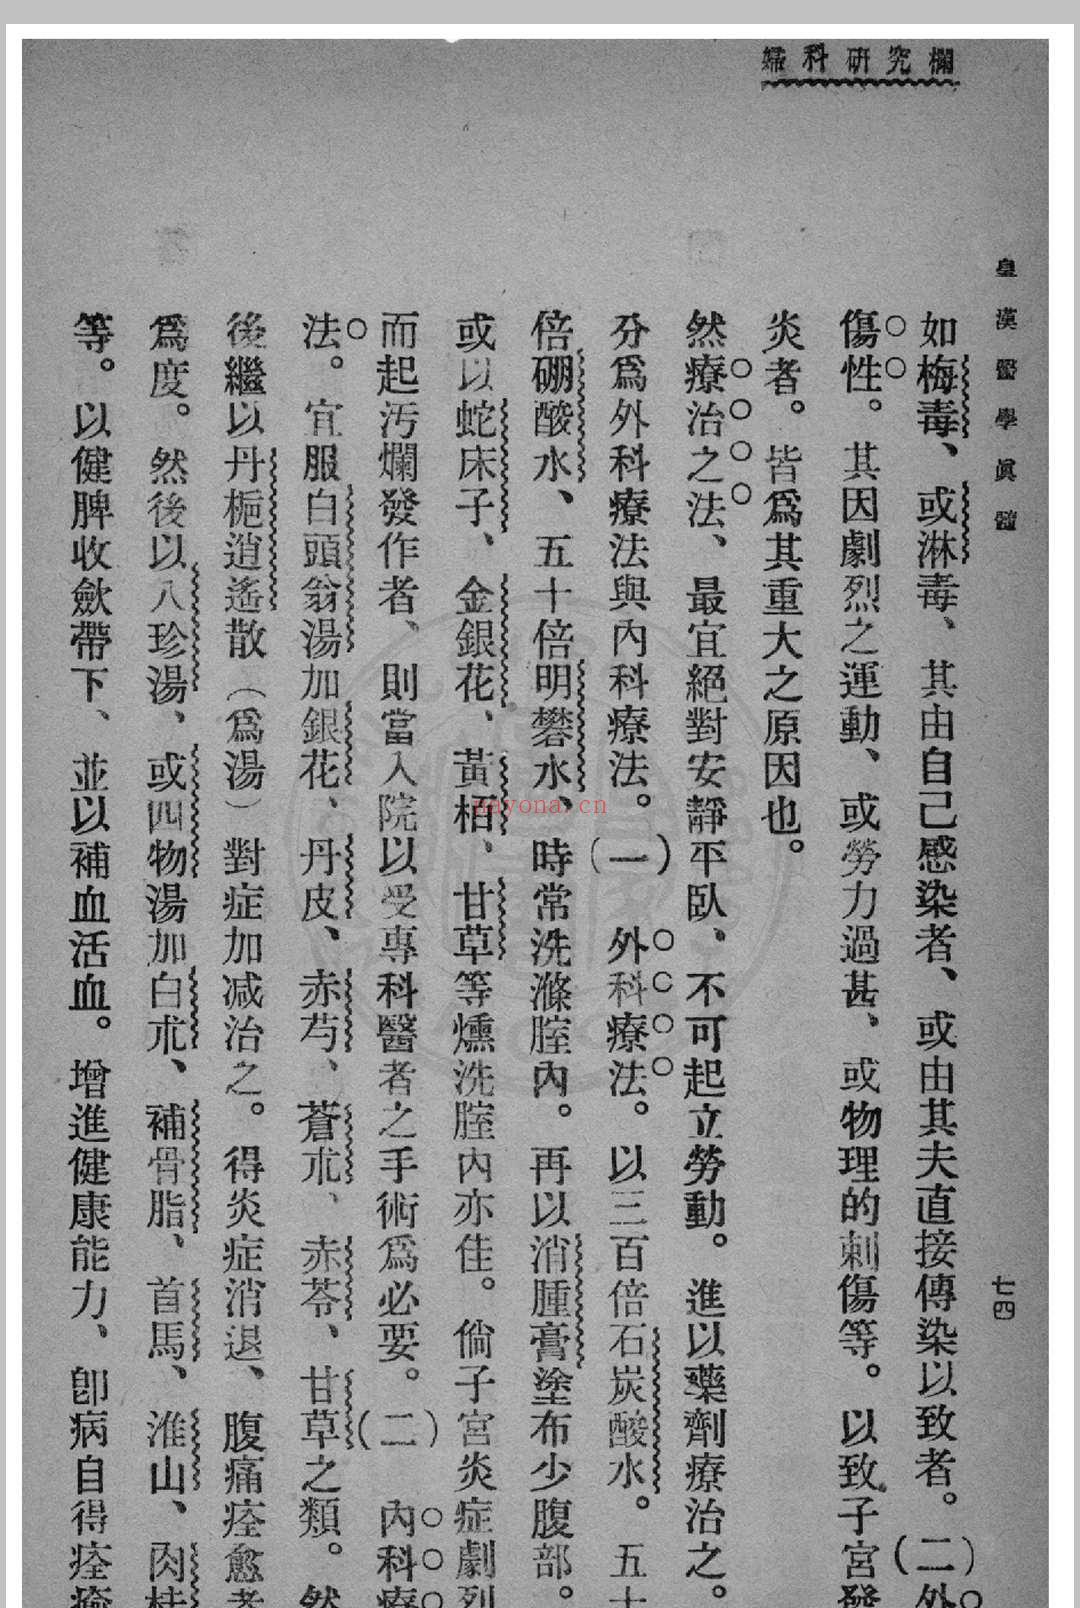 皇汉医学真髓 蒋尚锦撰 1935年